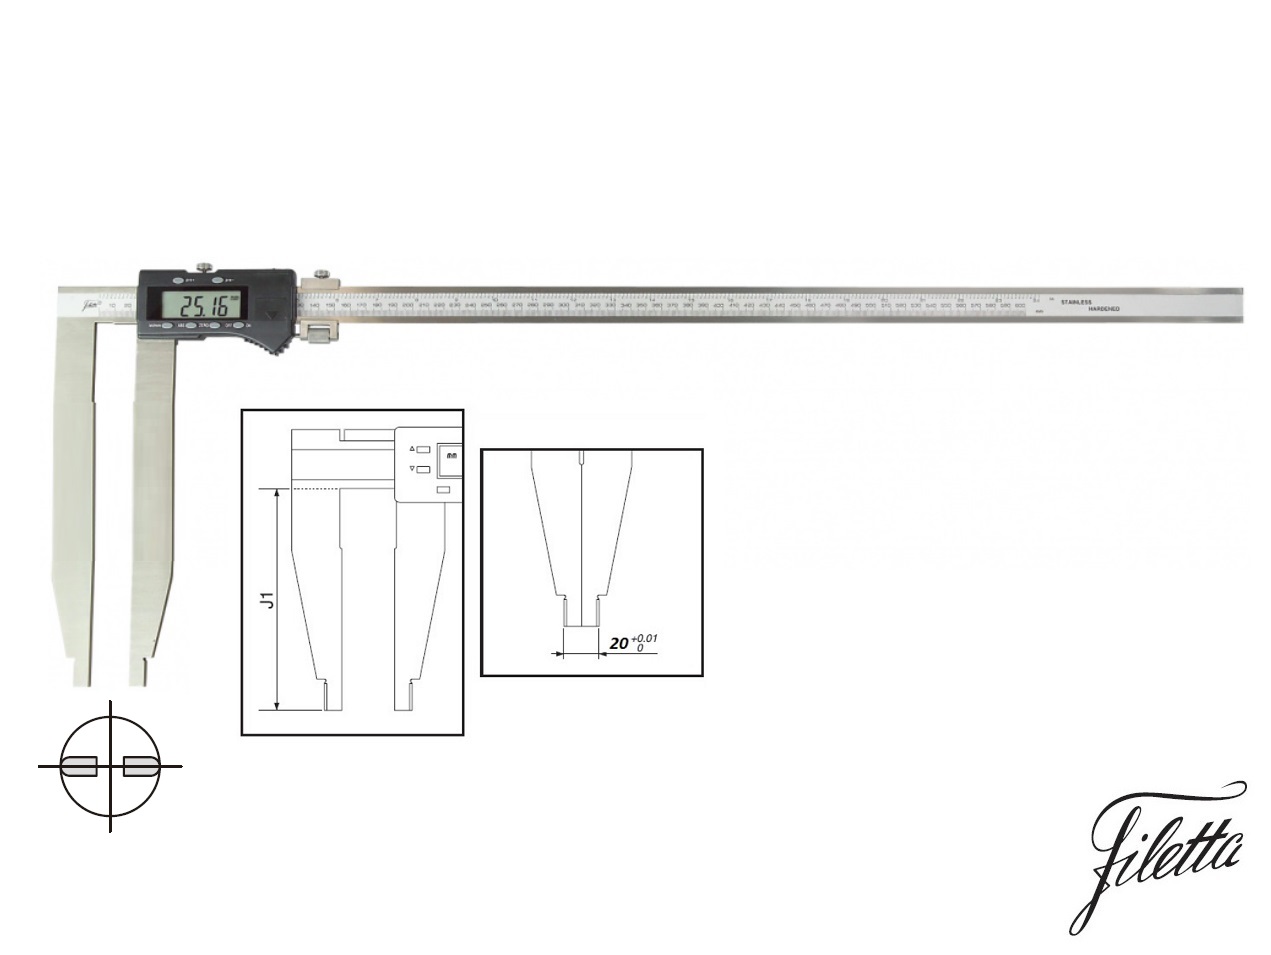 Digitální posuvné měřítko Filetta 0-1000 mm  bez nožíků, s měřicími čelistmi 300 mm